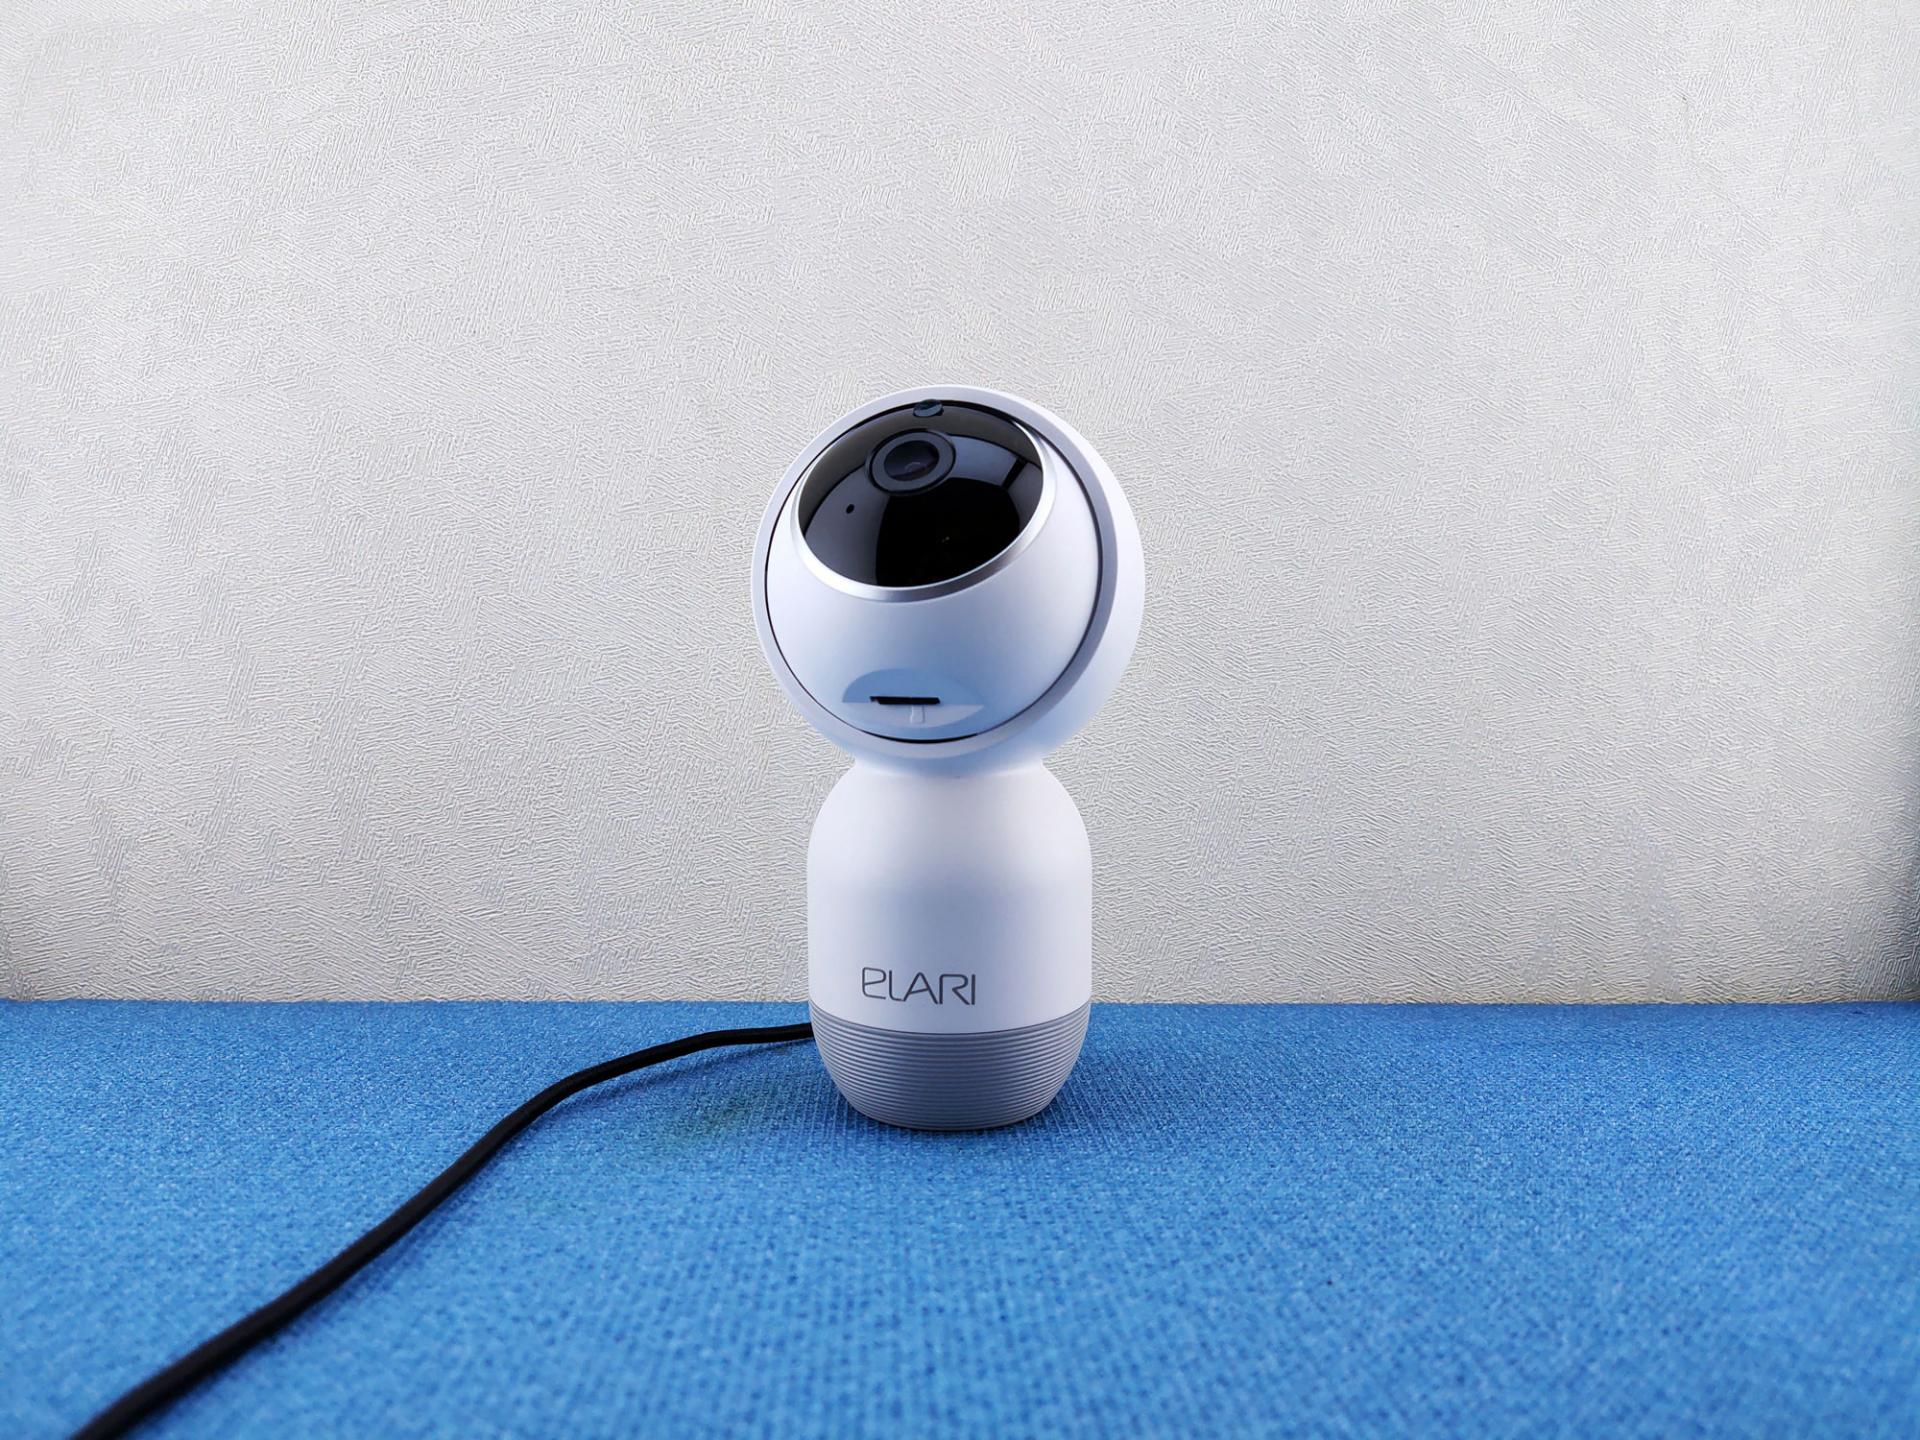 Тест-драйв сетевой камеры ELARI Smart Camera 360°